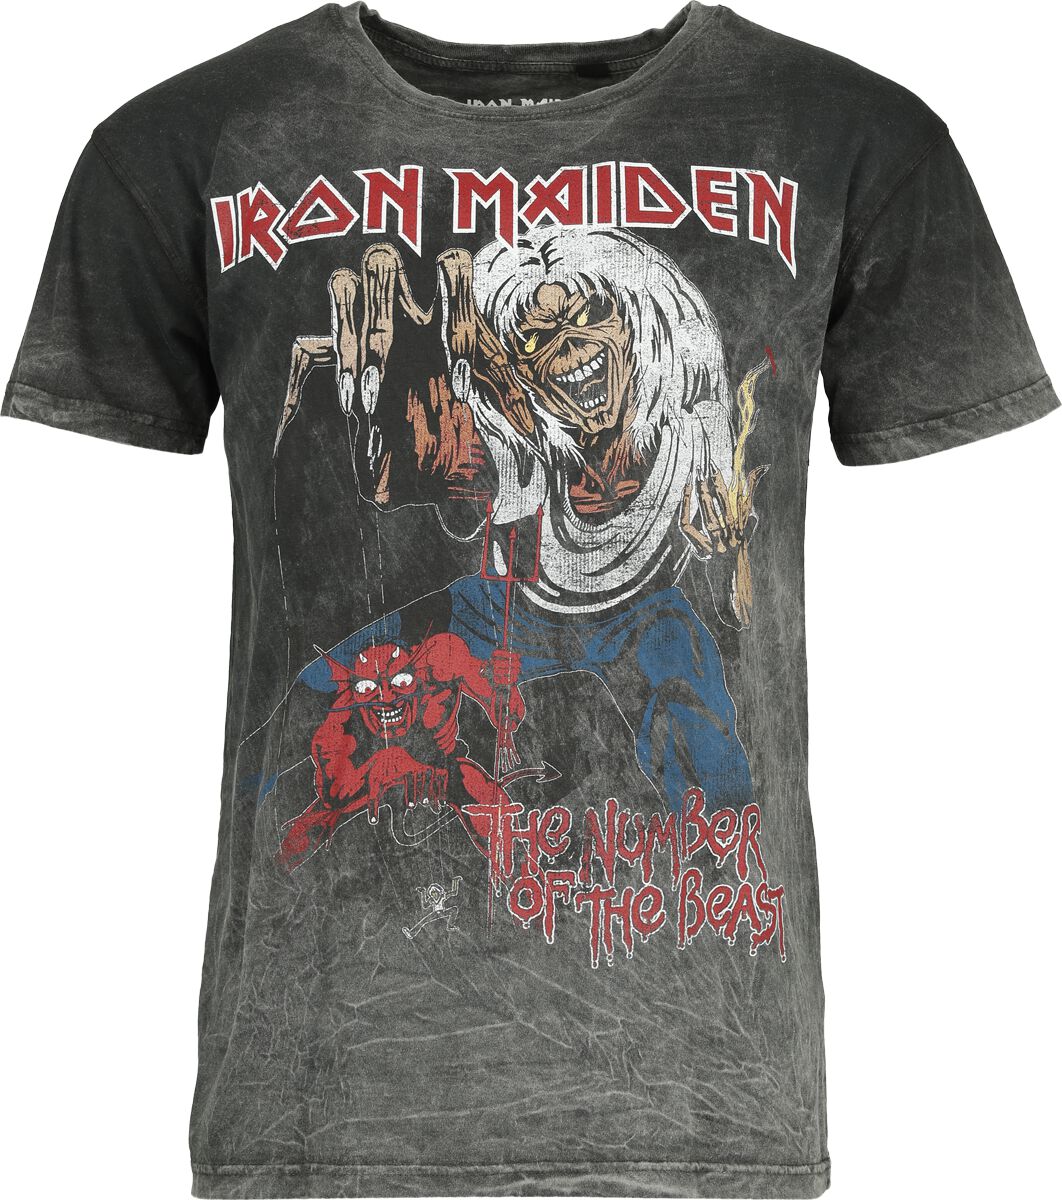 Iron Maiden T-Shirt - The number of the beast - S bis XL - für Männer - Größe XL - grau  - Lizenziertes Merchandise!